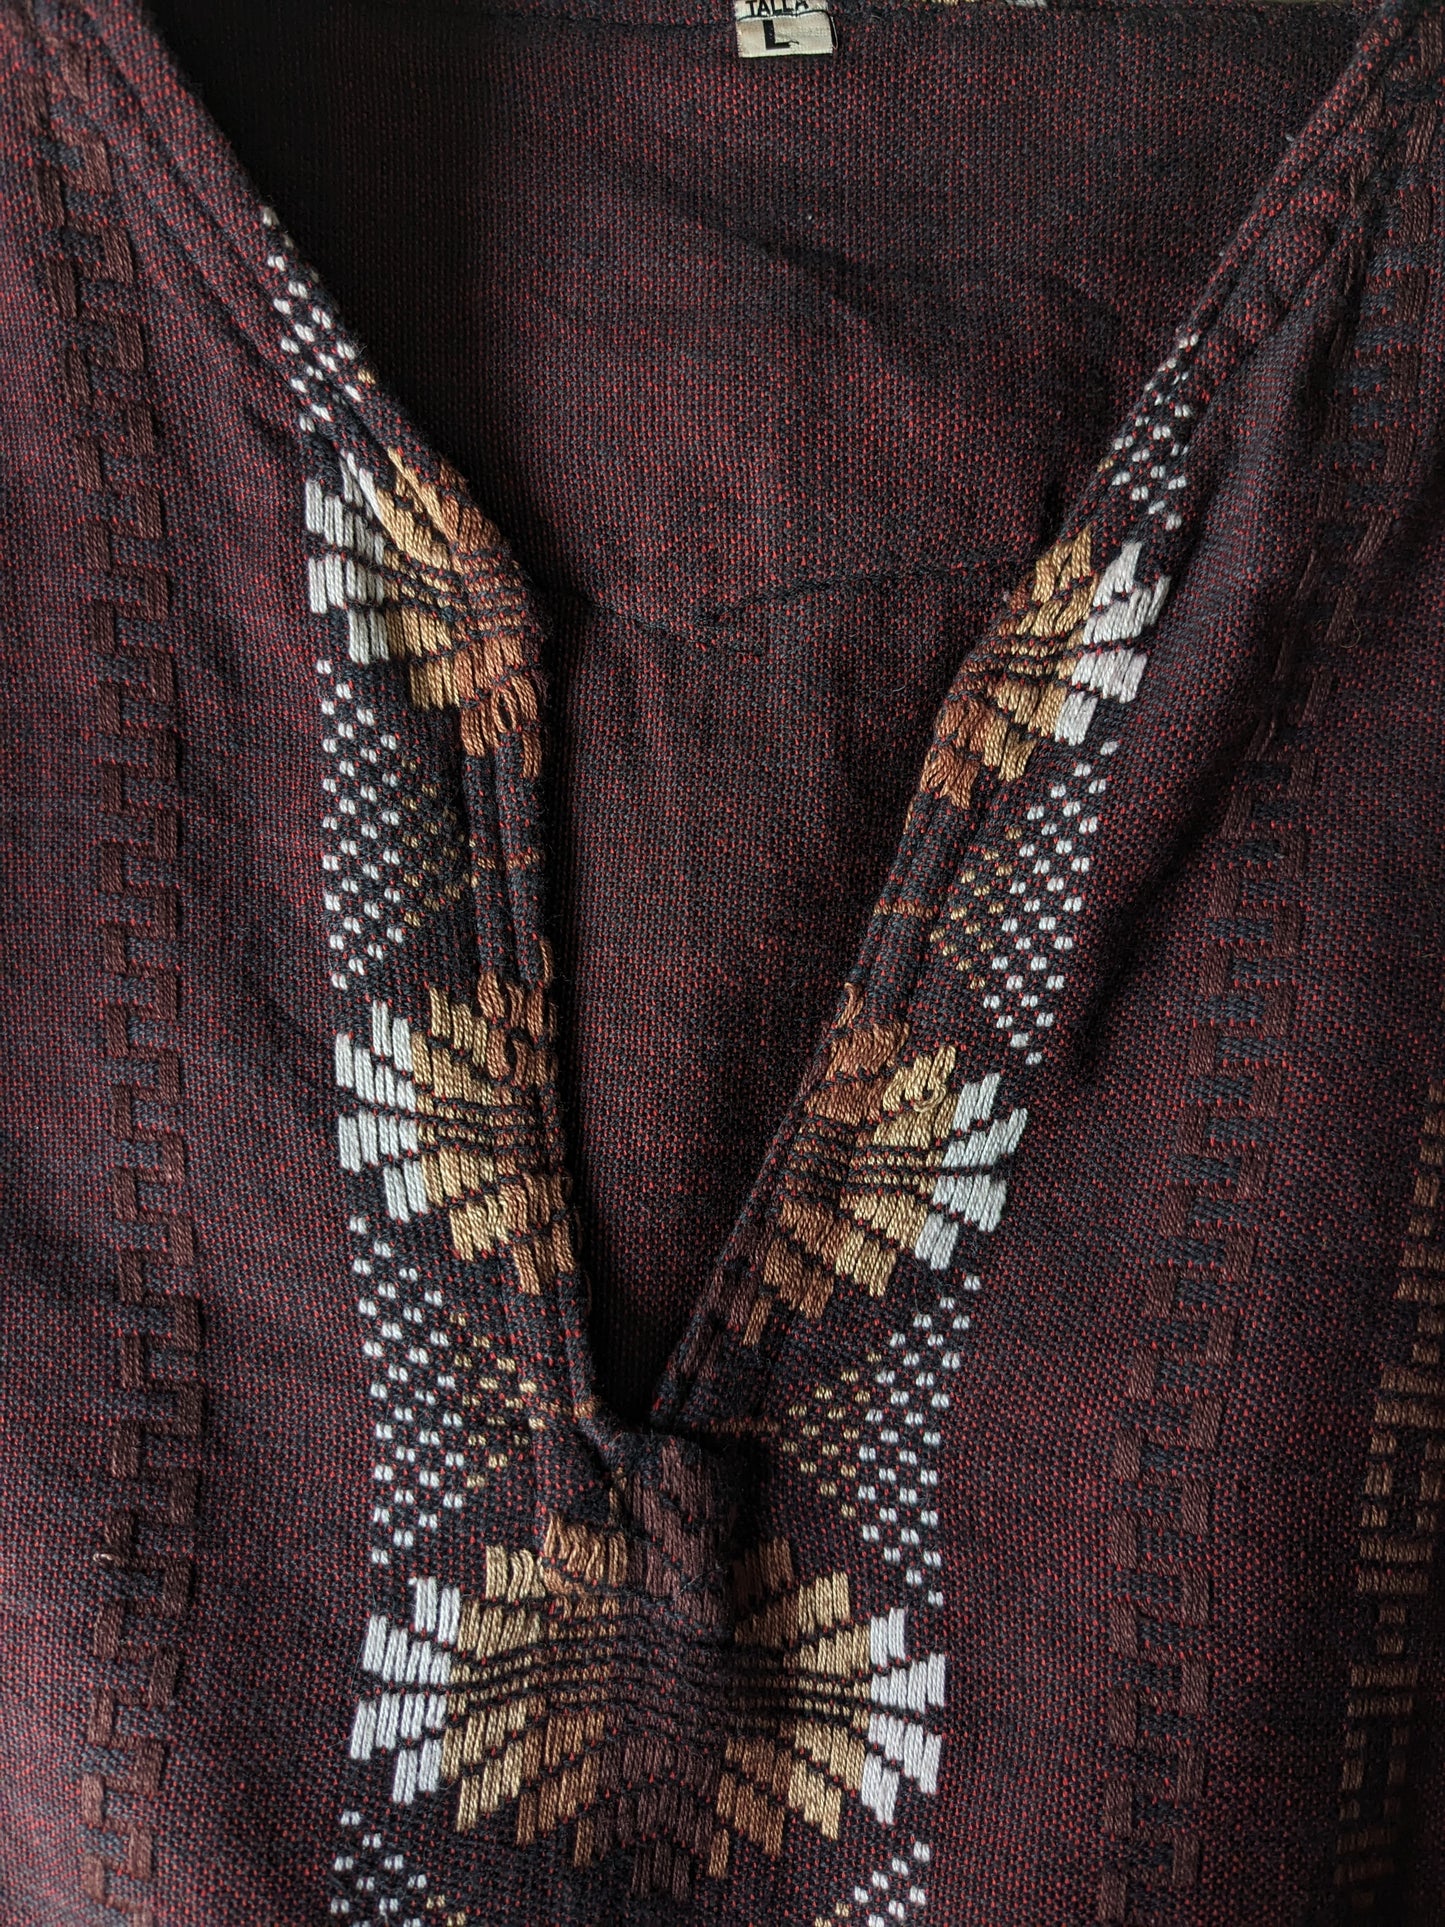 Vintage shirt met V-Hals. Rood Zwart gemêleerd, met Bruin Wit motief. Maat L.